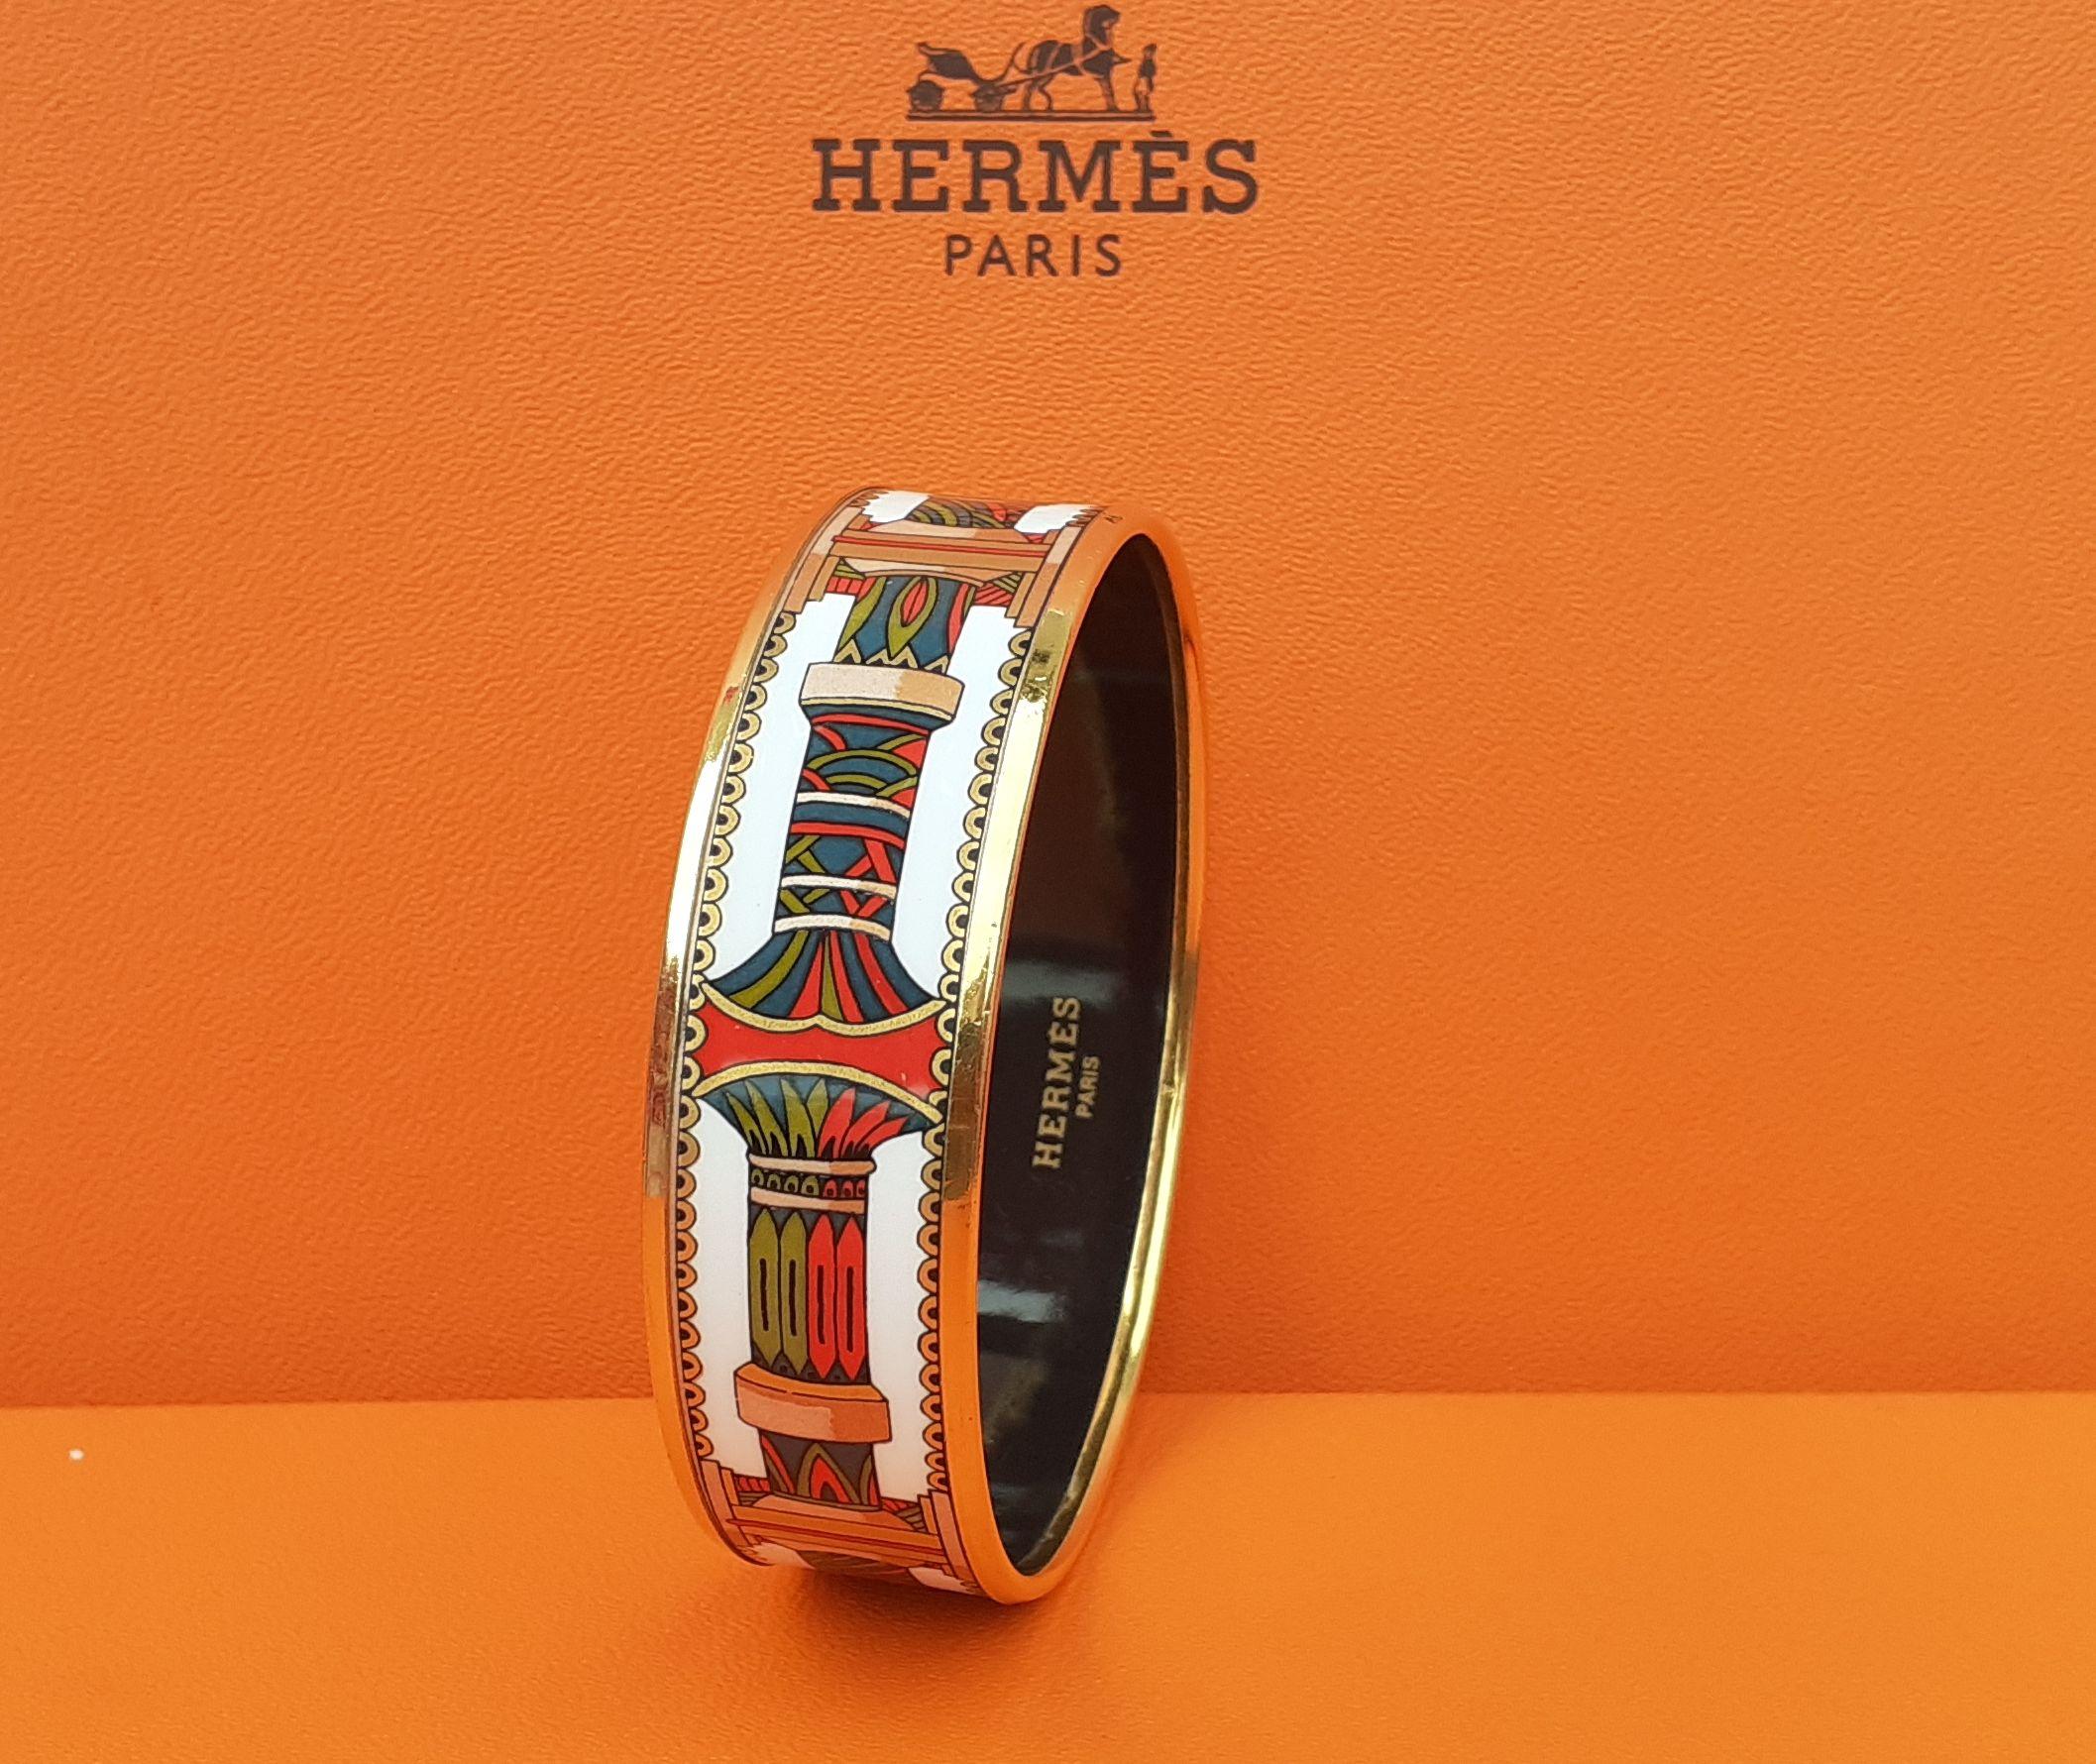 Magnifique bracelet Hermès authentique

Motifs géométriques

Made in Austria X (1994)

Fabriqué en émail imprimé et quincaillerie plaquée or jaune

Coloris : Blanc, Rouge, Vert, Doré

